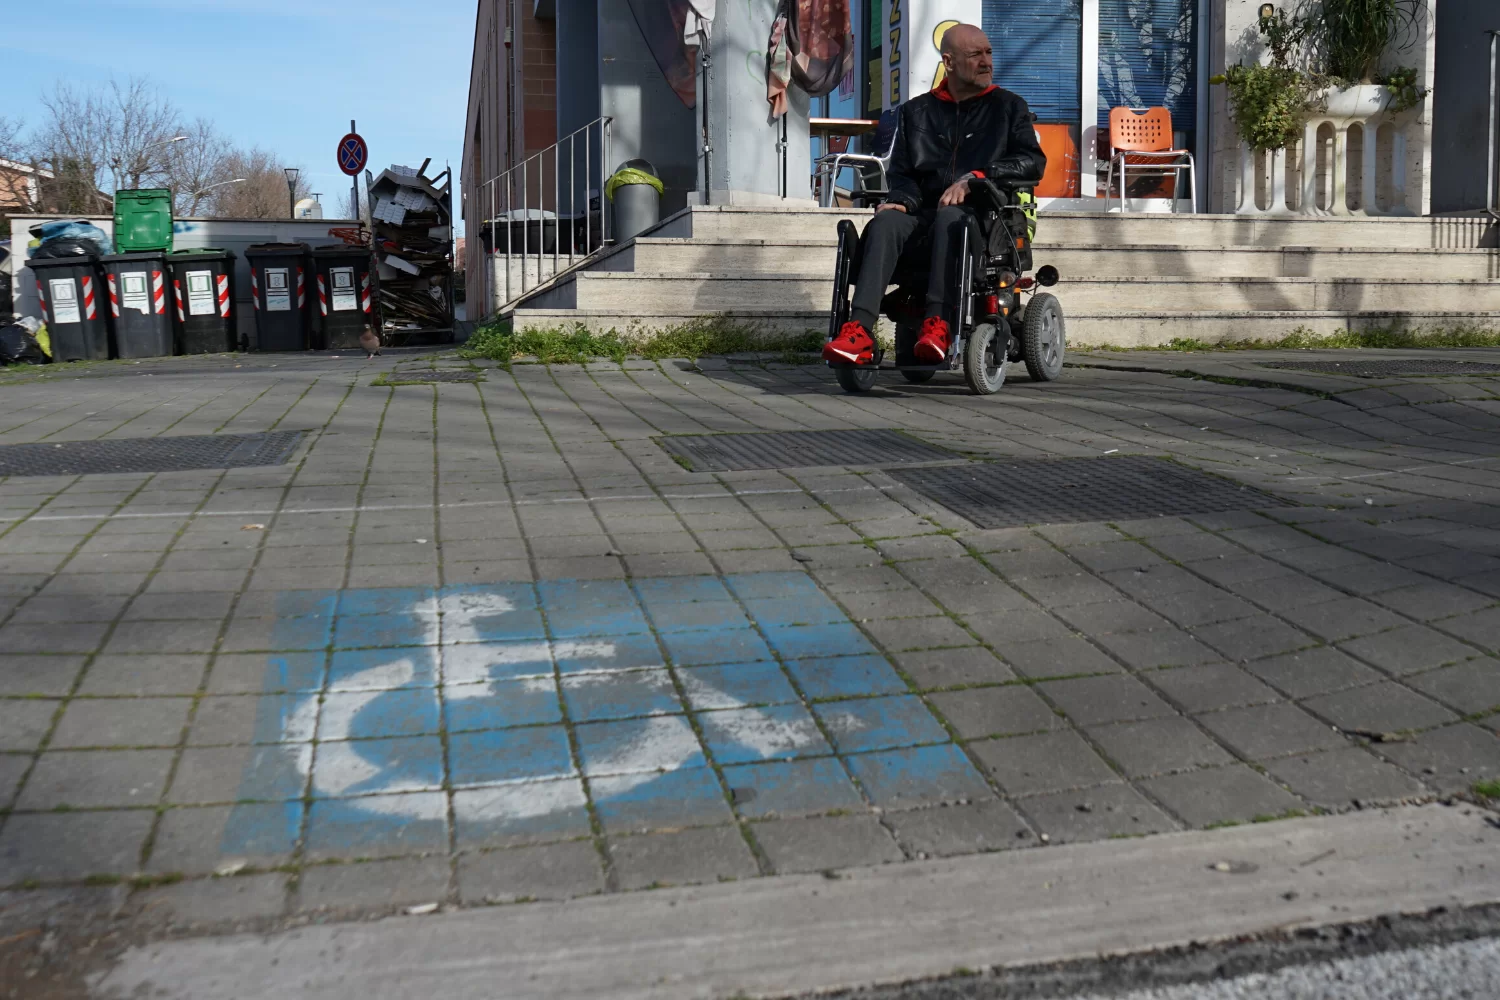 Rampe disabili, un simbolo contro i furbetti del parcheggio ability channel